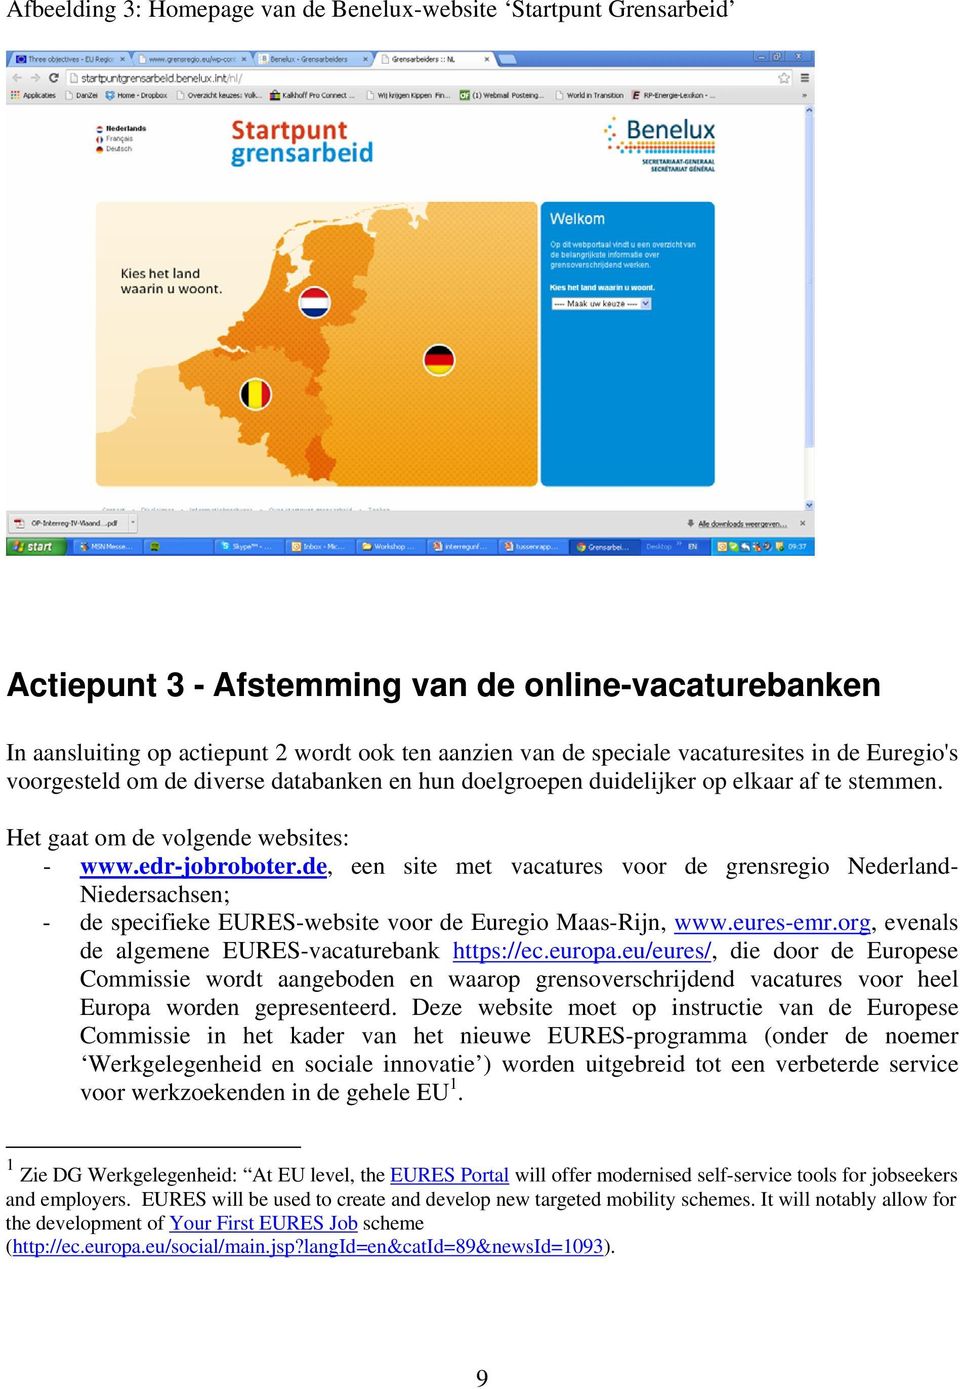 de, een site met vacatures voor de grensregio Nederland- Niedersachsen; - de specifieke EURES-website voor de Euregio Maas-Rijn, www.eures-emr.org, evenals de algemene EURES-vacaturebank https://ec.